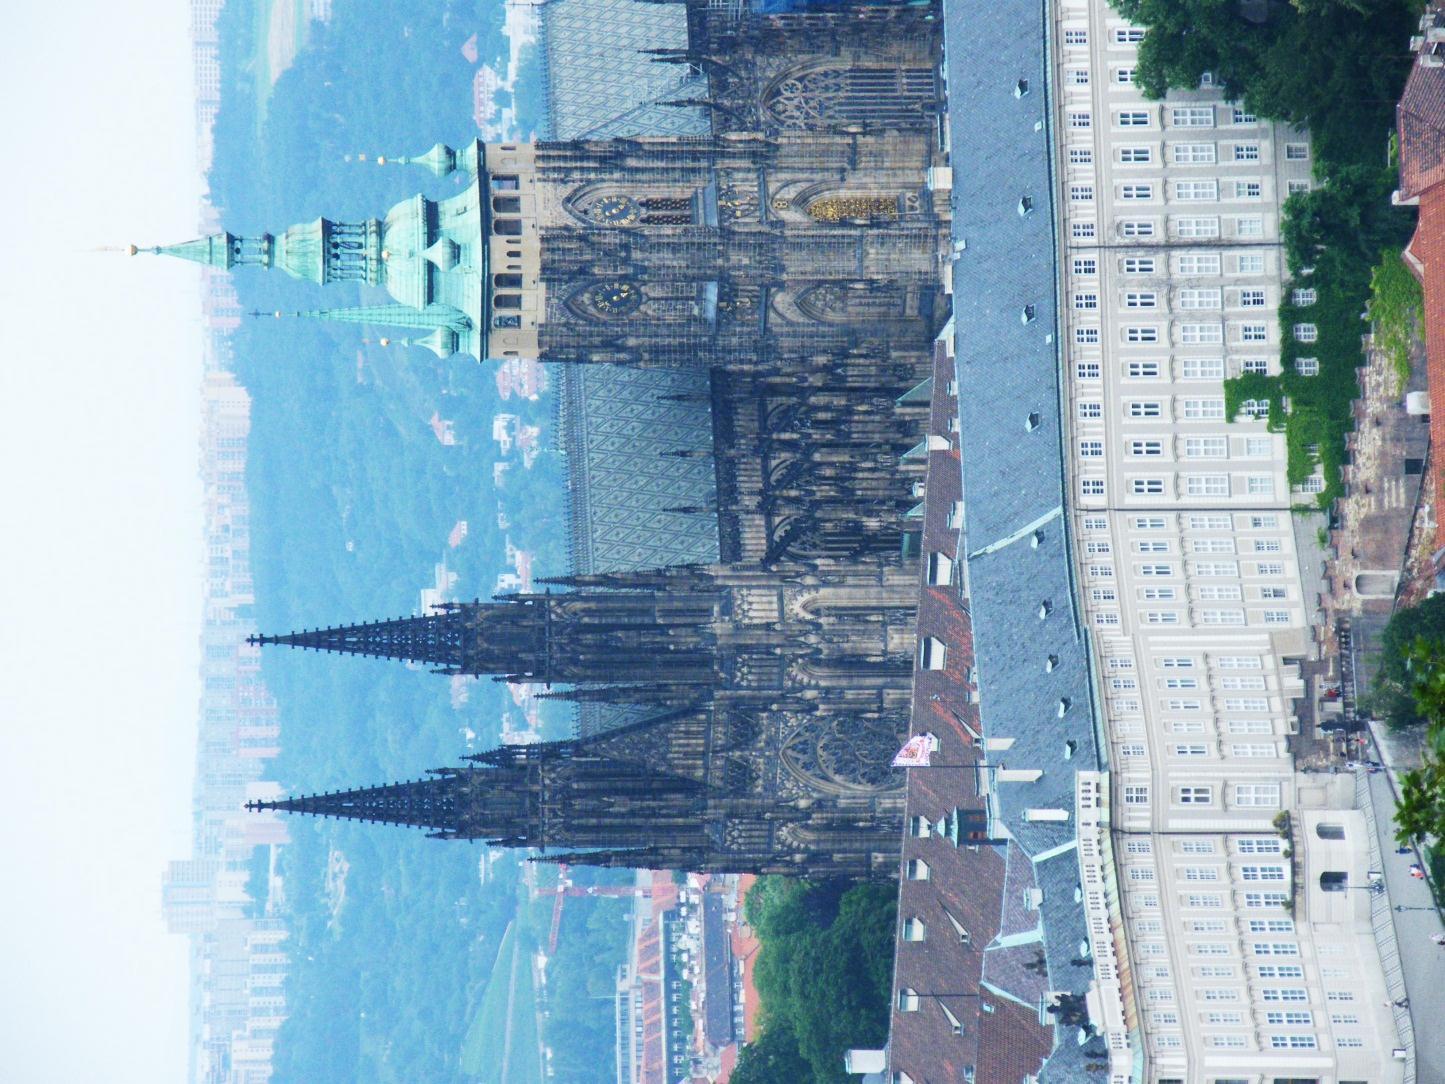 Podle Guinessovy knihy rekordů je Pražský hrad největším souvislým hradním